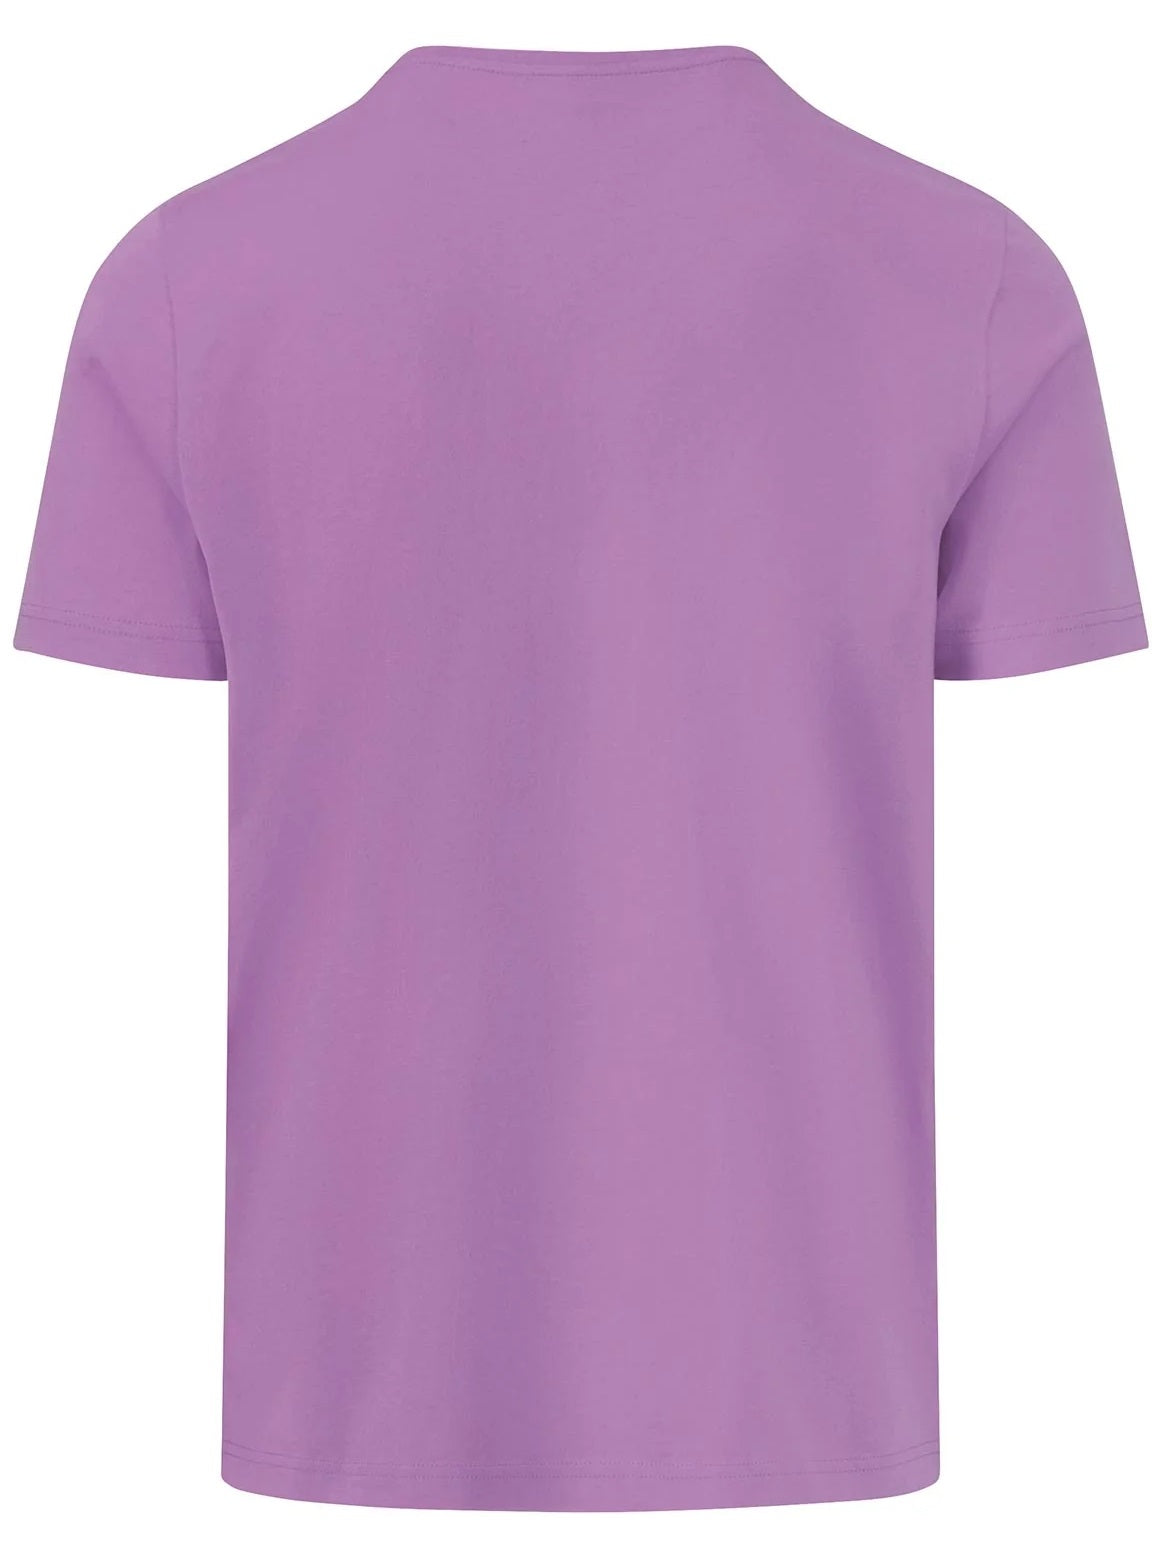 FYNCH HATTON T-Shirt - Men's Round Neck – Dusty Lavender